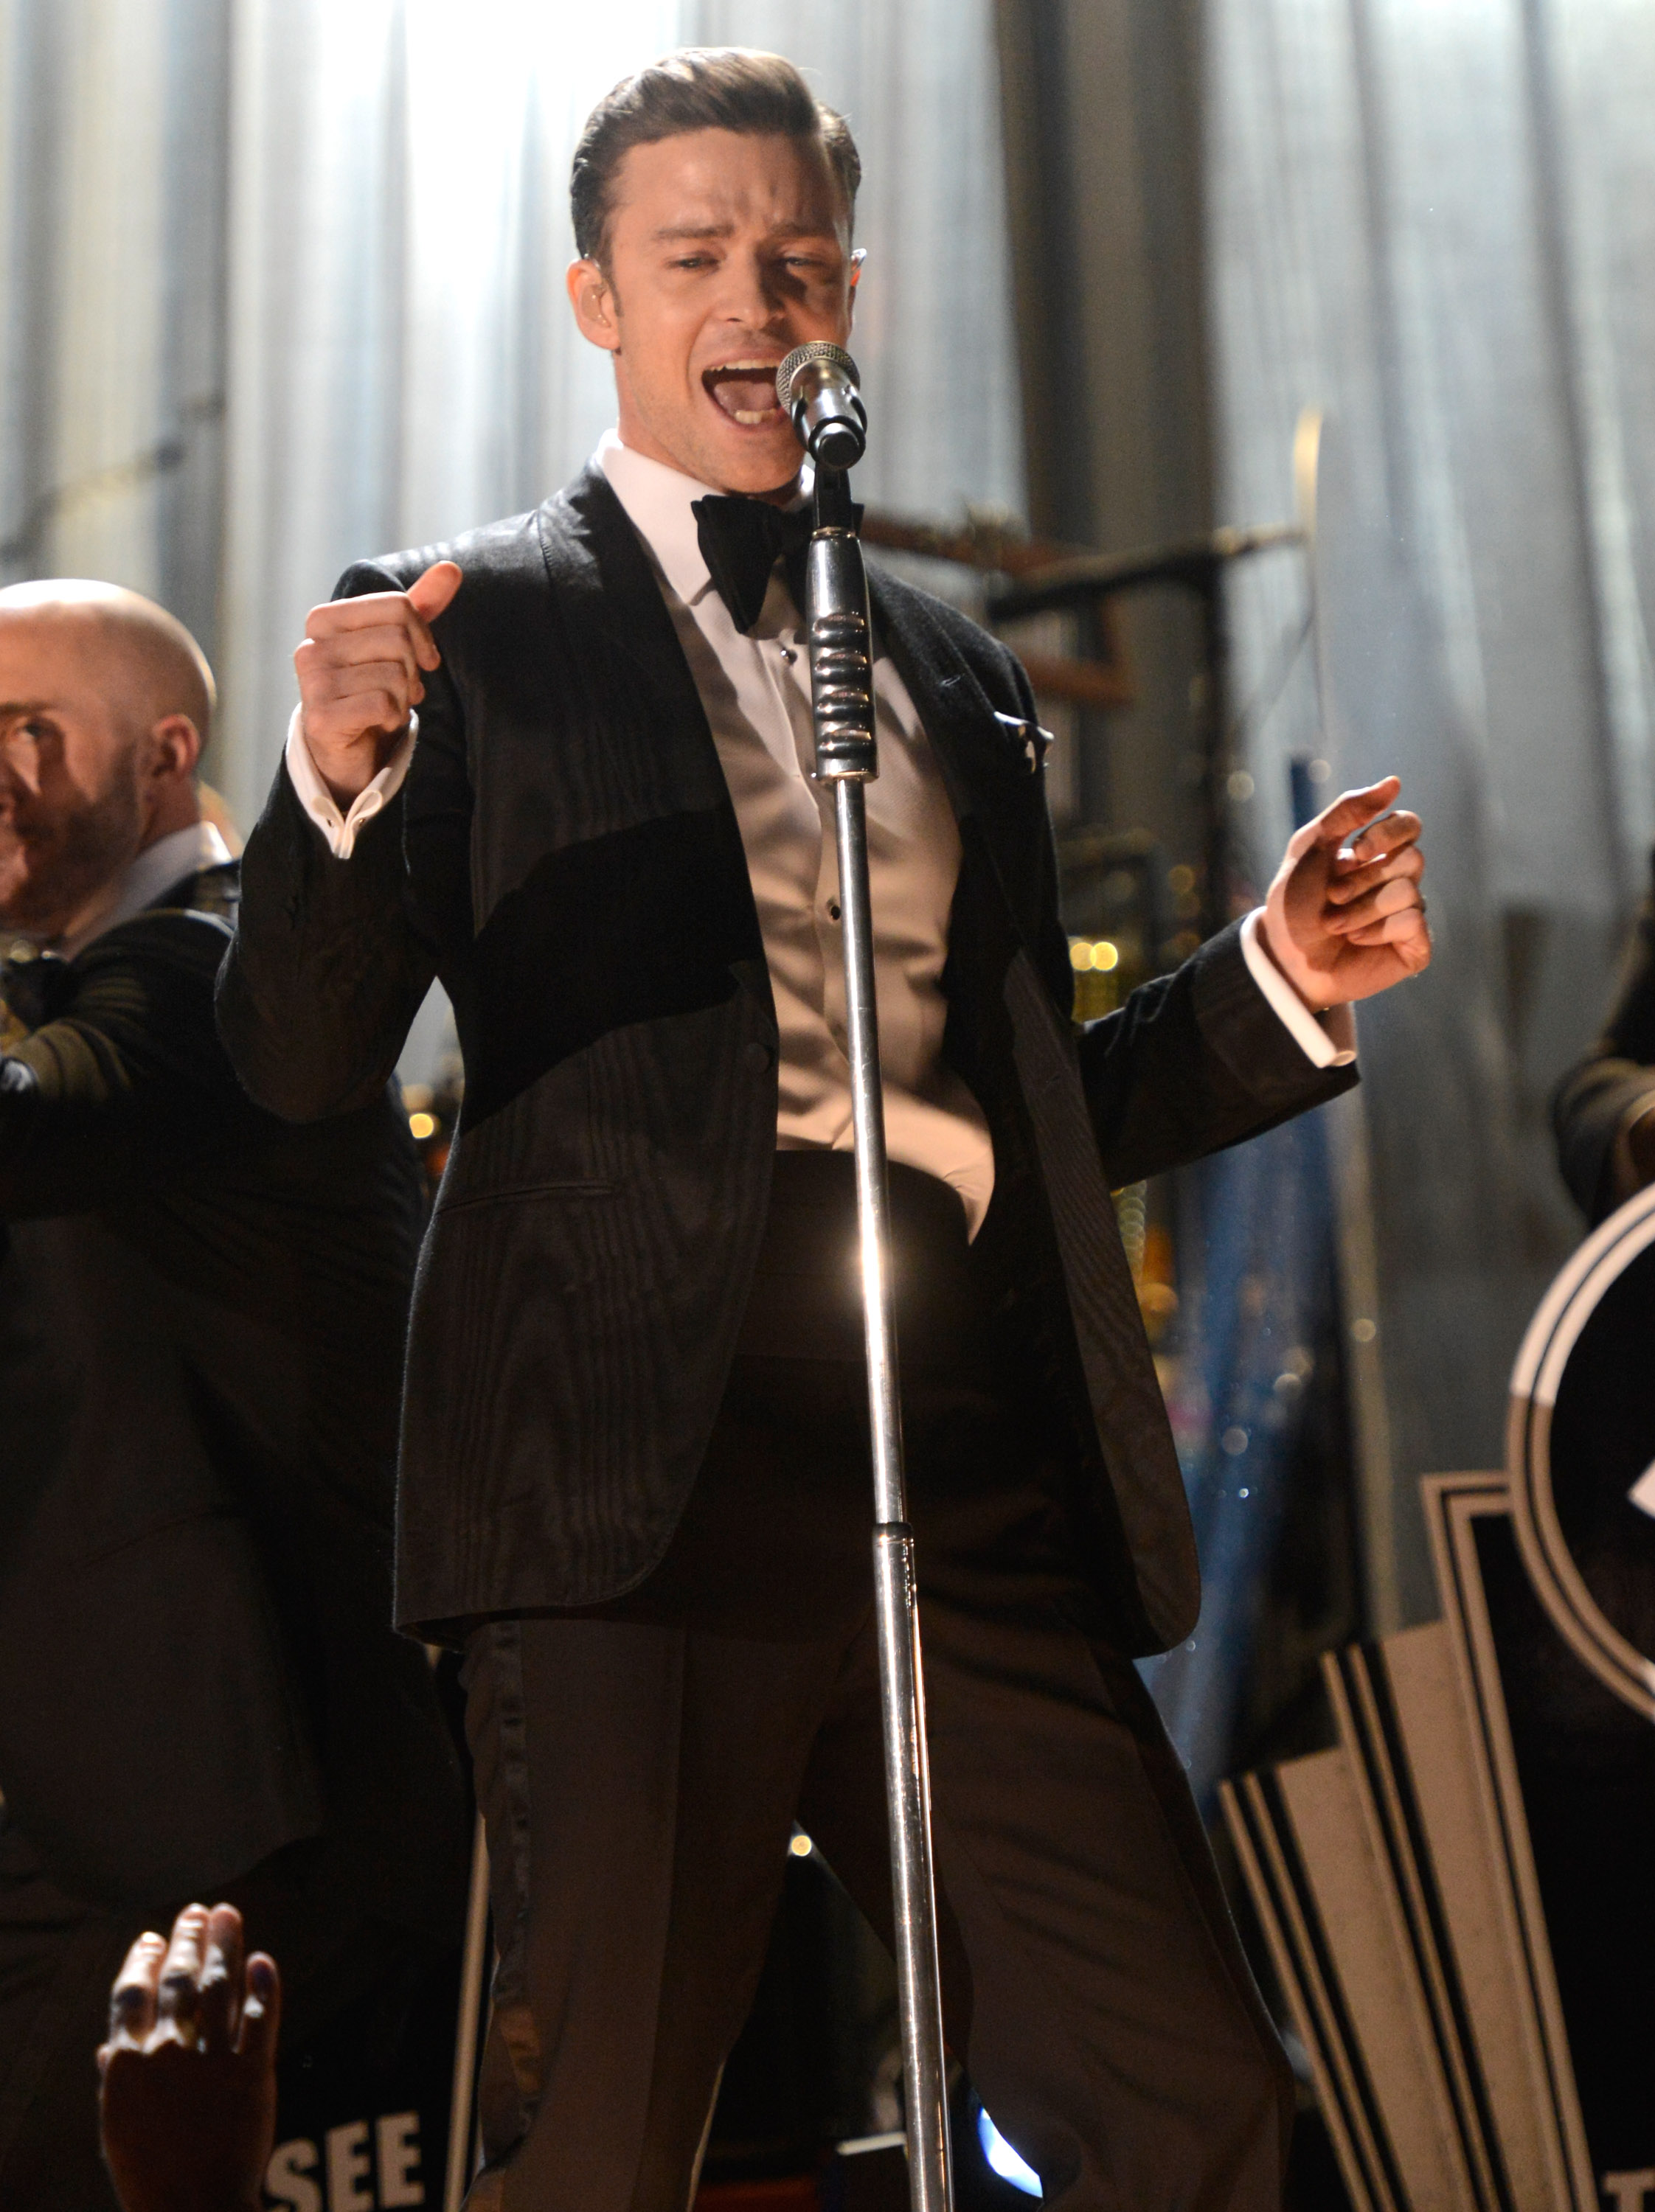 Justin Timberlake danced during his Grammys performance. POPSUGAR